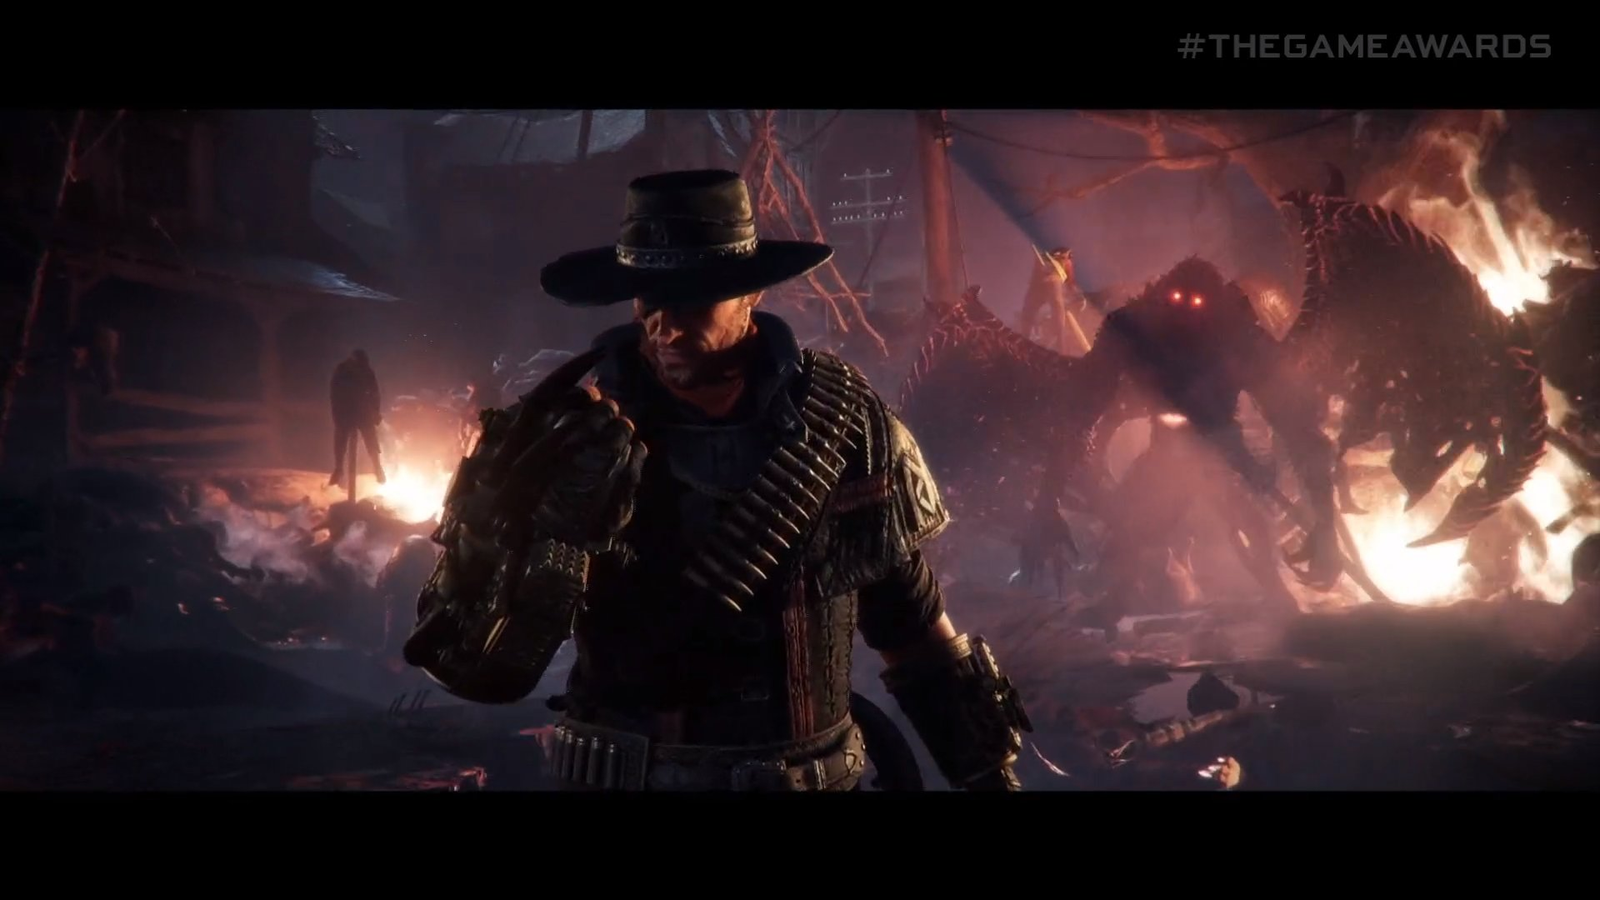 Evil West: novo trailer foca no modo coop do game